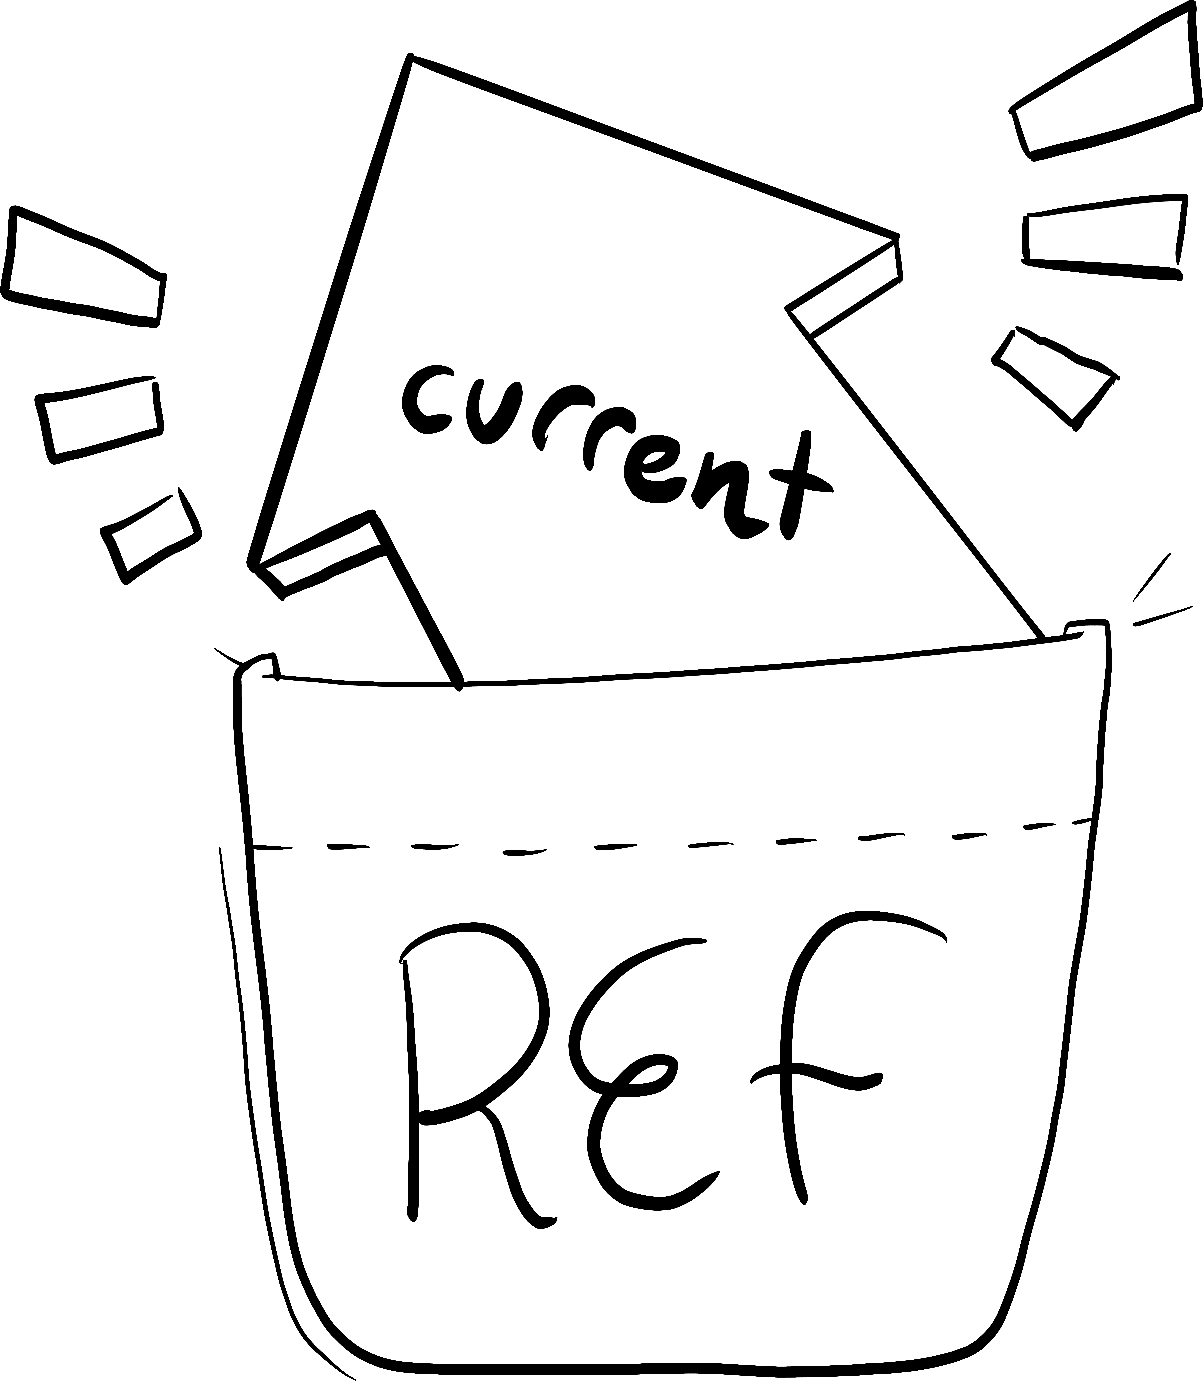 Sebuah panah dengan tulisan 'current' dimasukkan ke dalam saku dengan tulisan 'ref'.